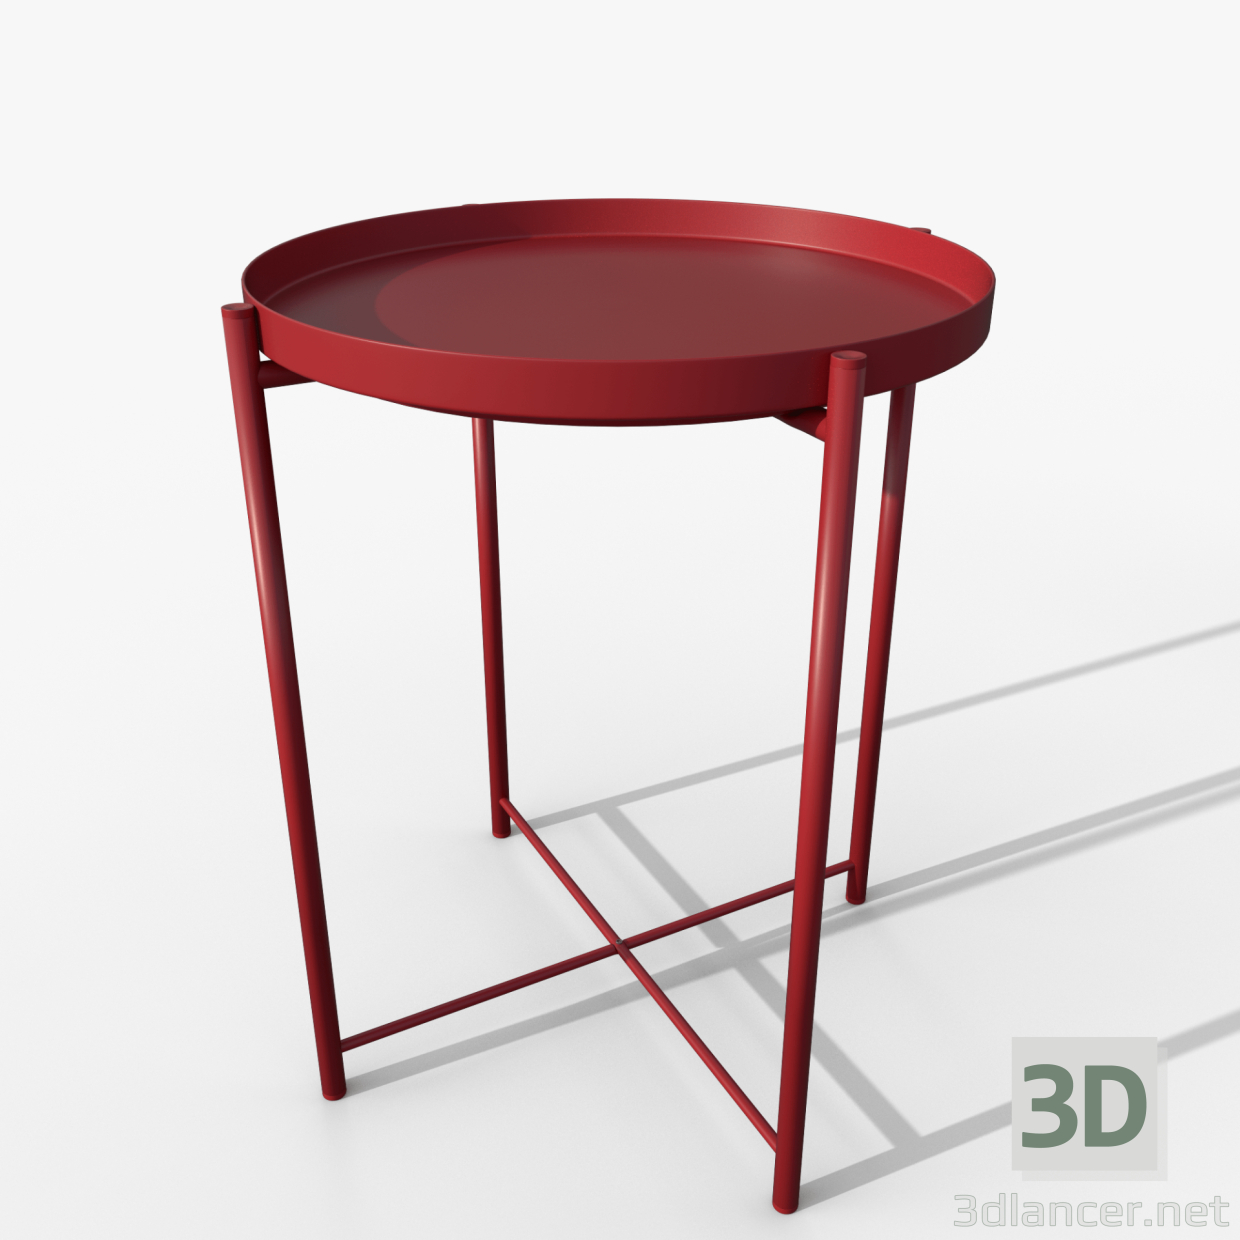 Gladom Tisch rot IKEA 3D-Modell kaufen - Rendern